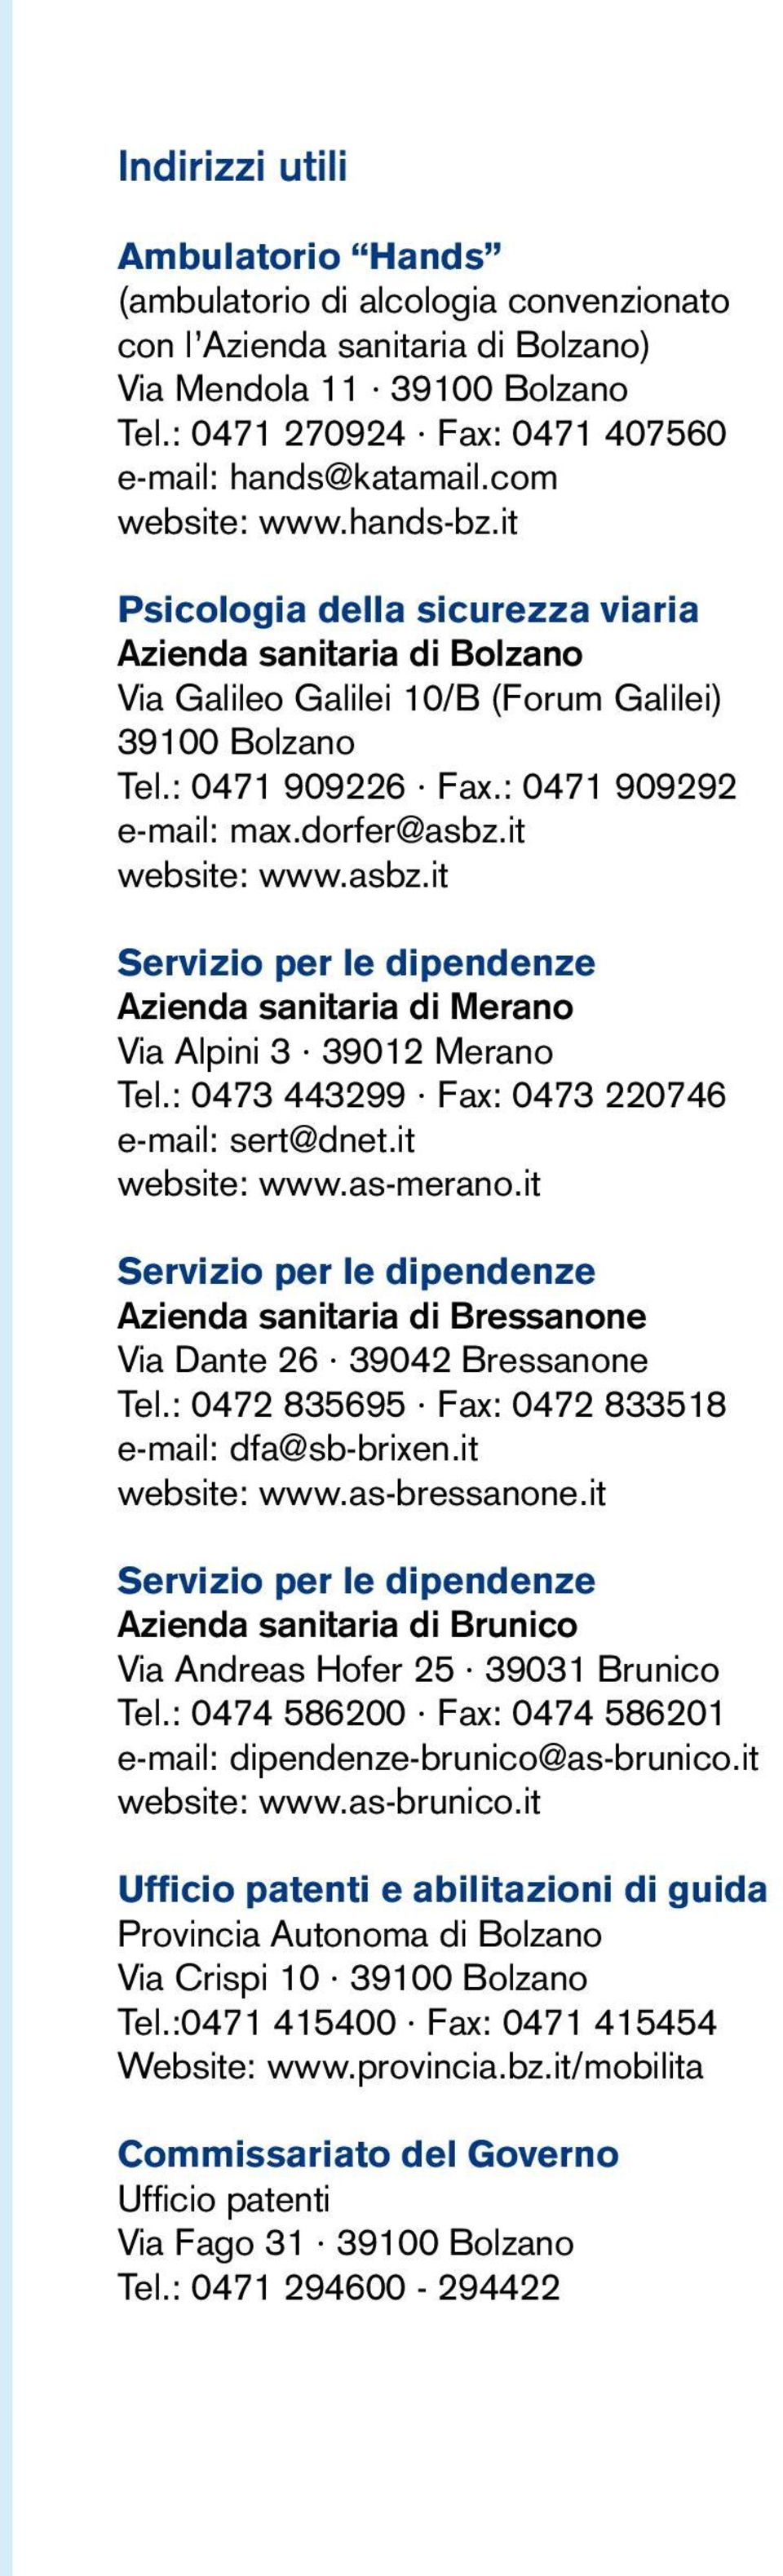 dorfer@asbz.it website: www.asbz.it Servizio per le dipendenze Azienda sanitaria di Merano Via Alpini 3 39012 Merano Tel.: 0473 443299 Fax: 0473 220746 e-mail: sert@dnet.it website: www.as-merano.